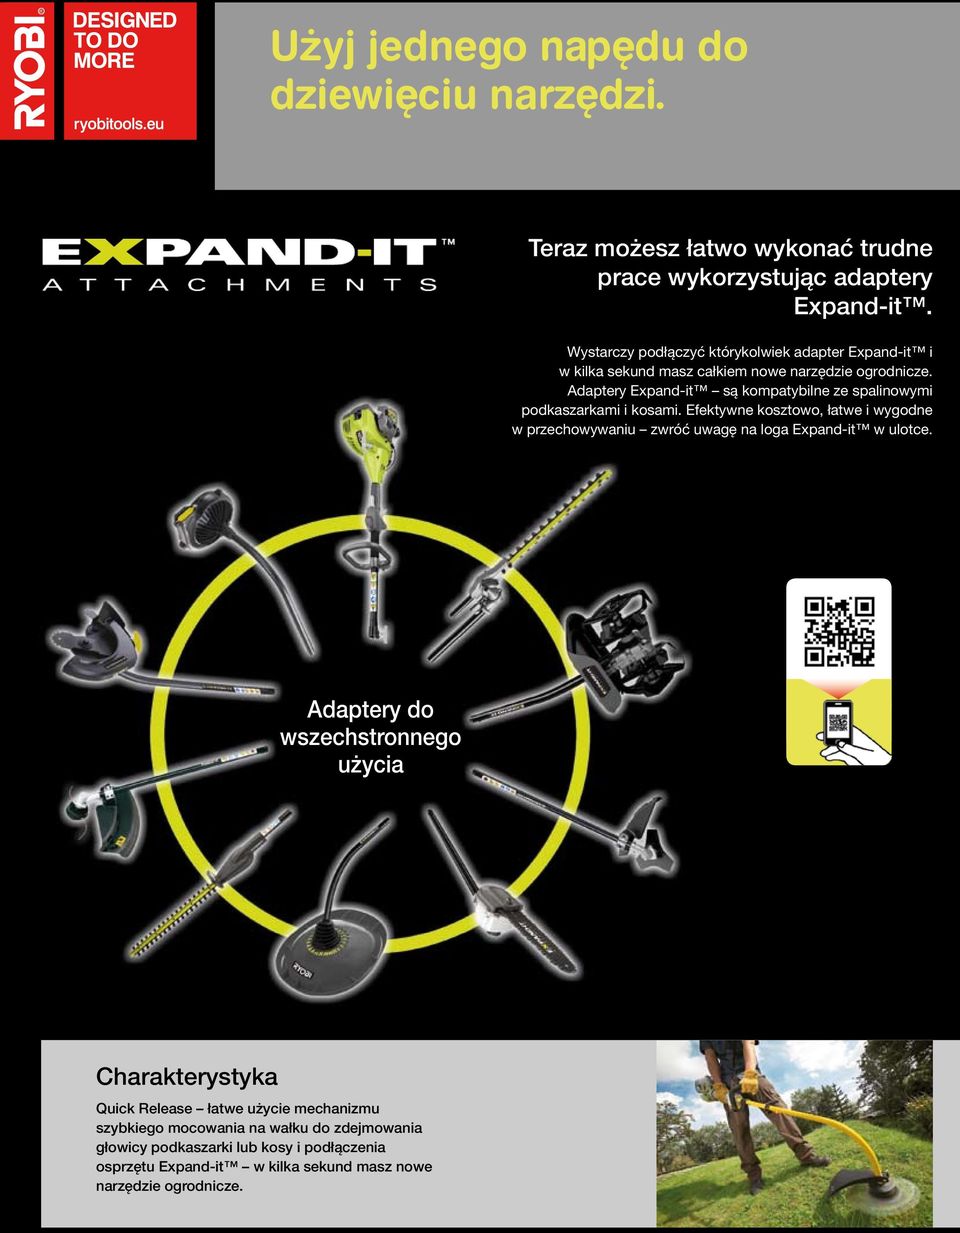 Adaptery Expand-it są kompatybilne ze spalinowymi podkaszarkami i kosami.